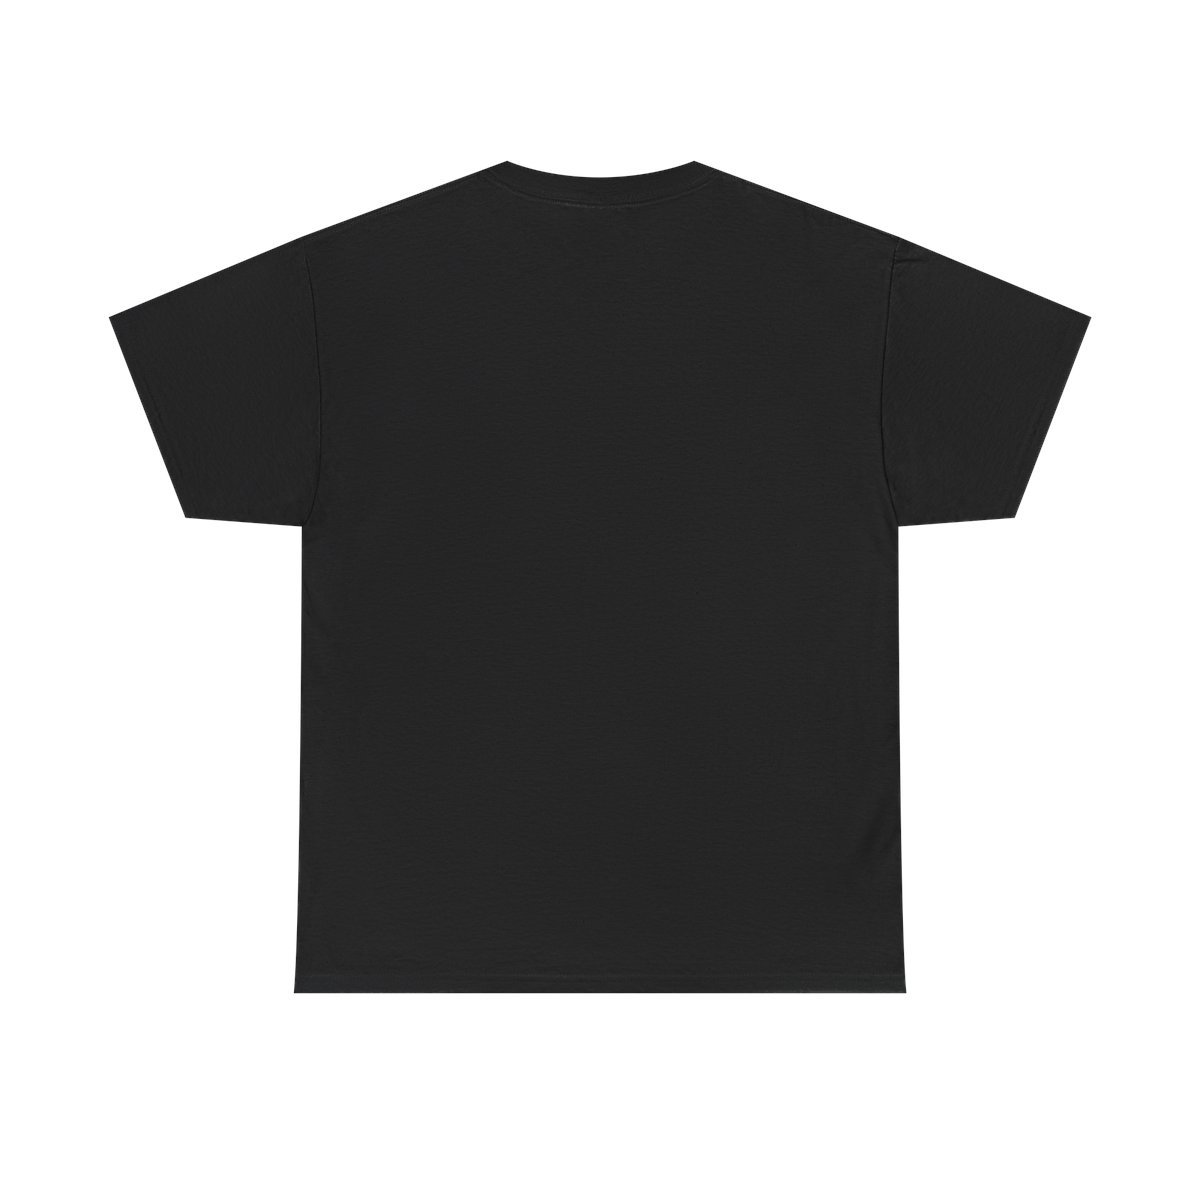 Ignescent – Exodus Short Sleeve Tshirt